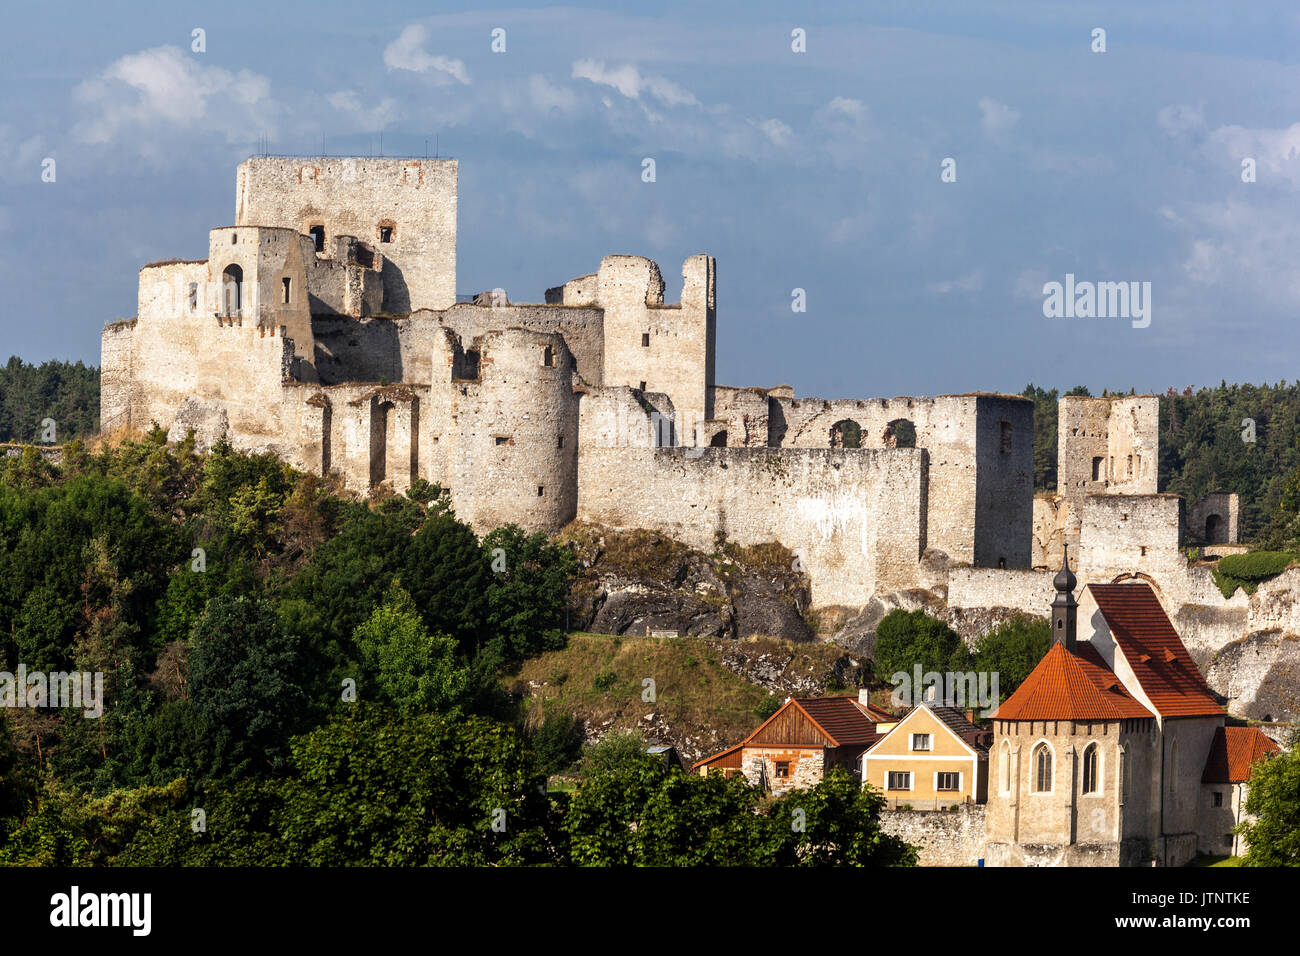 Château de Rabi, ruines de château gothique médiévale en paysage, République Tchèque Banque D'Images